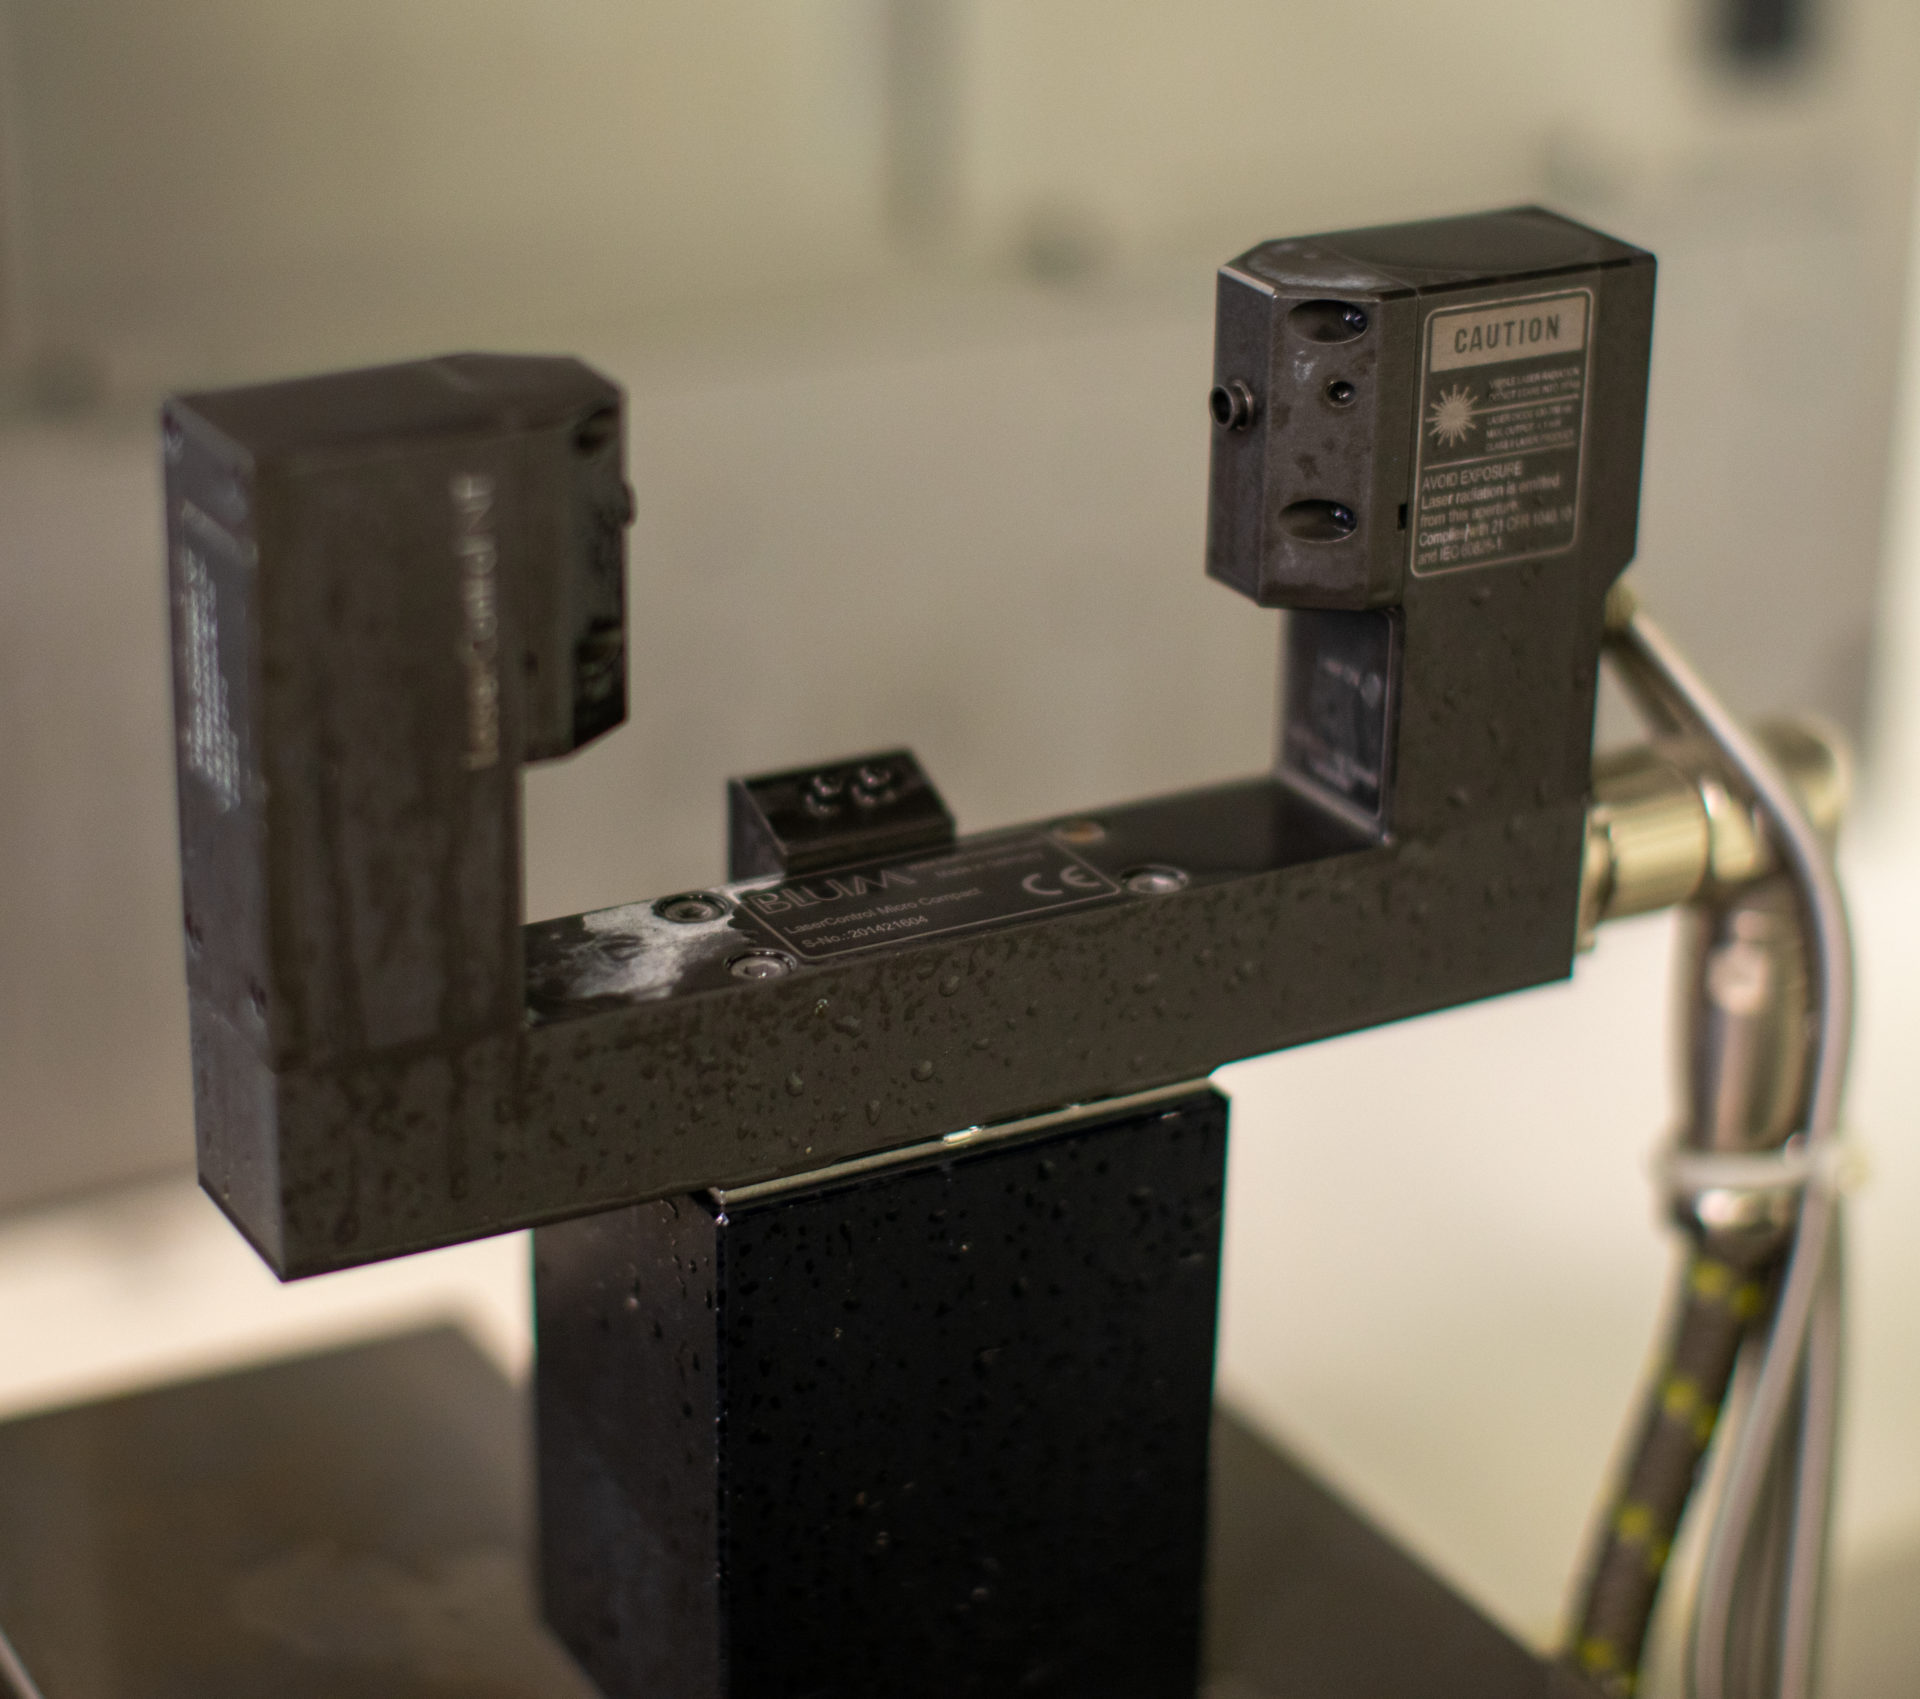 Blum laser tool measurement system